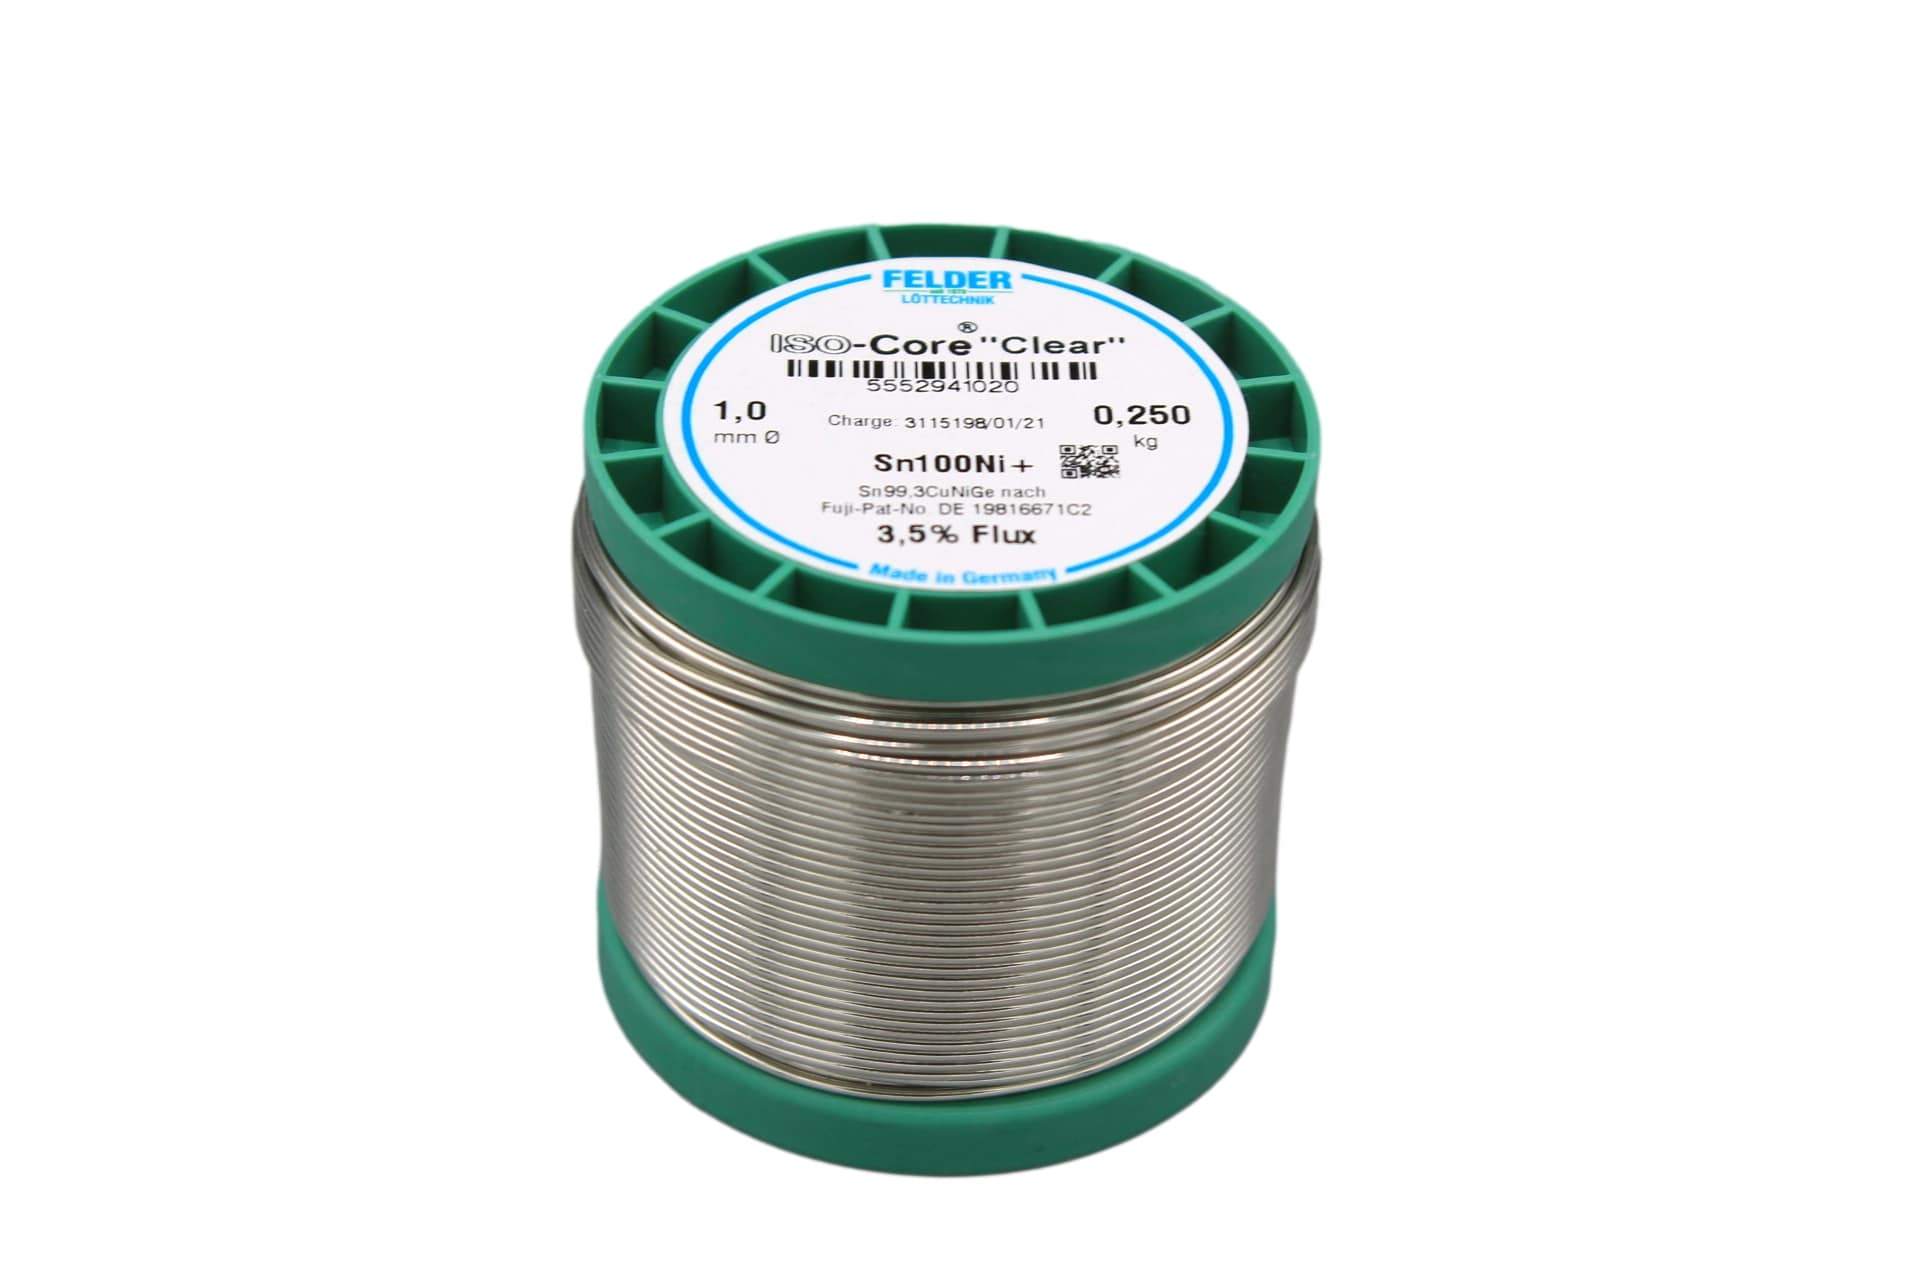 5552941020 Felder solder wire, lead-free, Sn100Ni+, 1 mm, 250g, roll